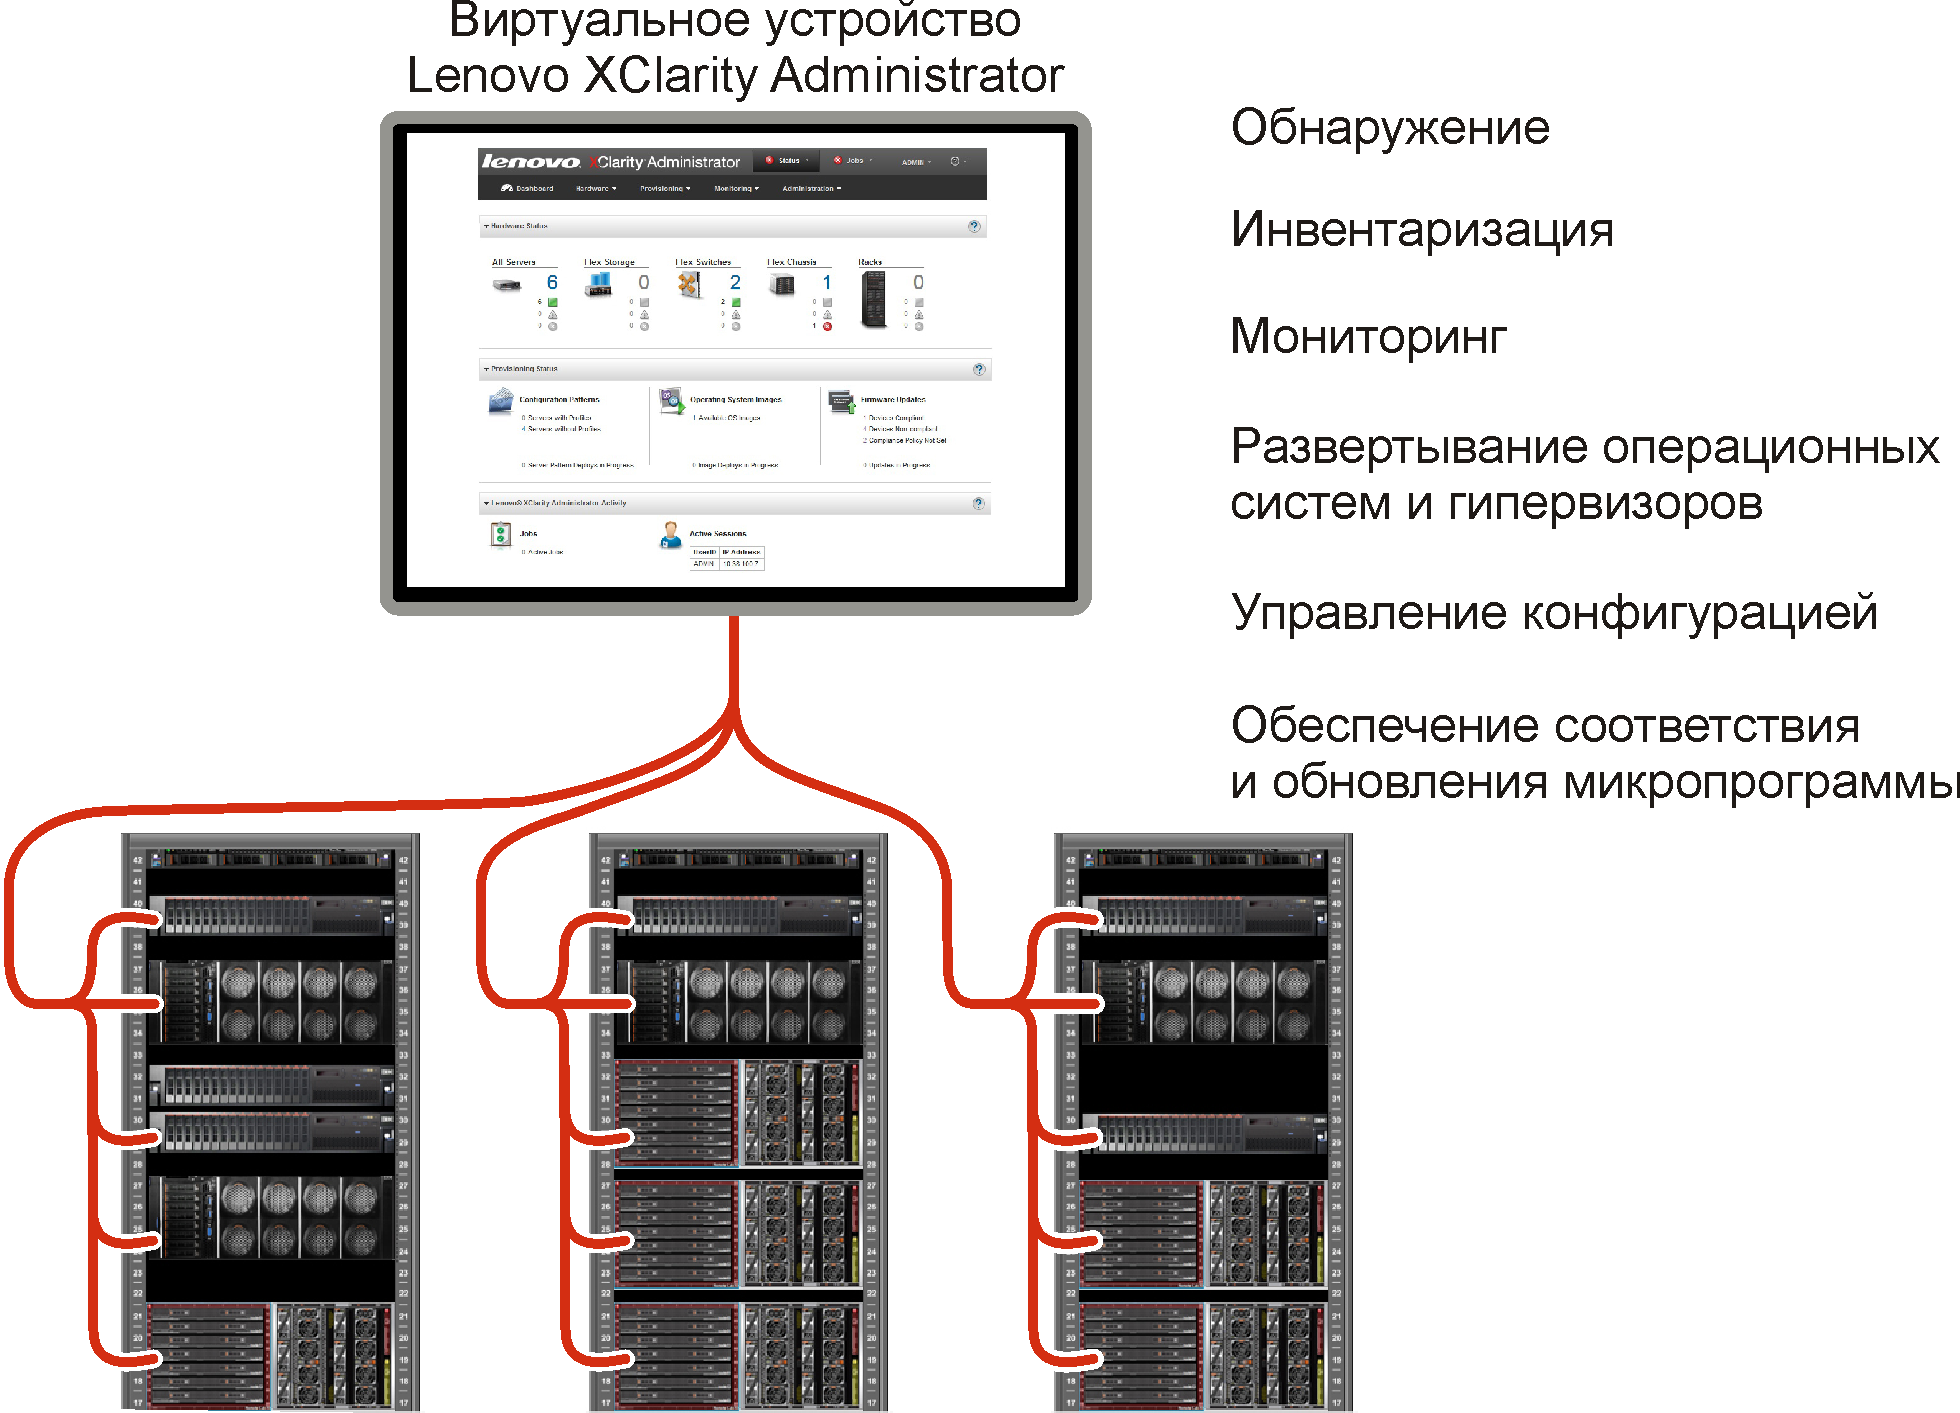 Рисунок с изображением, как Lenovo XClarity Administrator управляет несколькими рамами, и списком основных особенностей Lenovo XClarity Administrator.